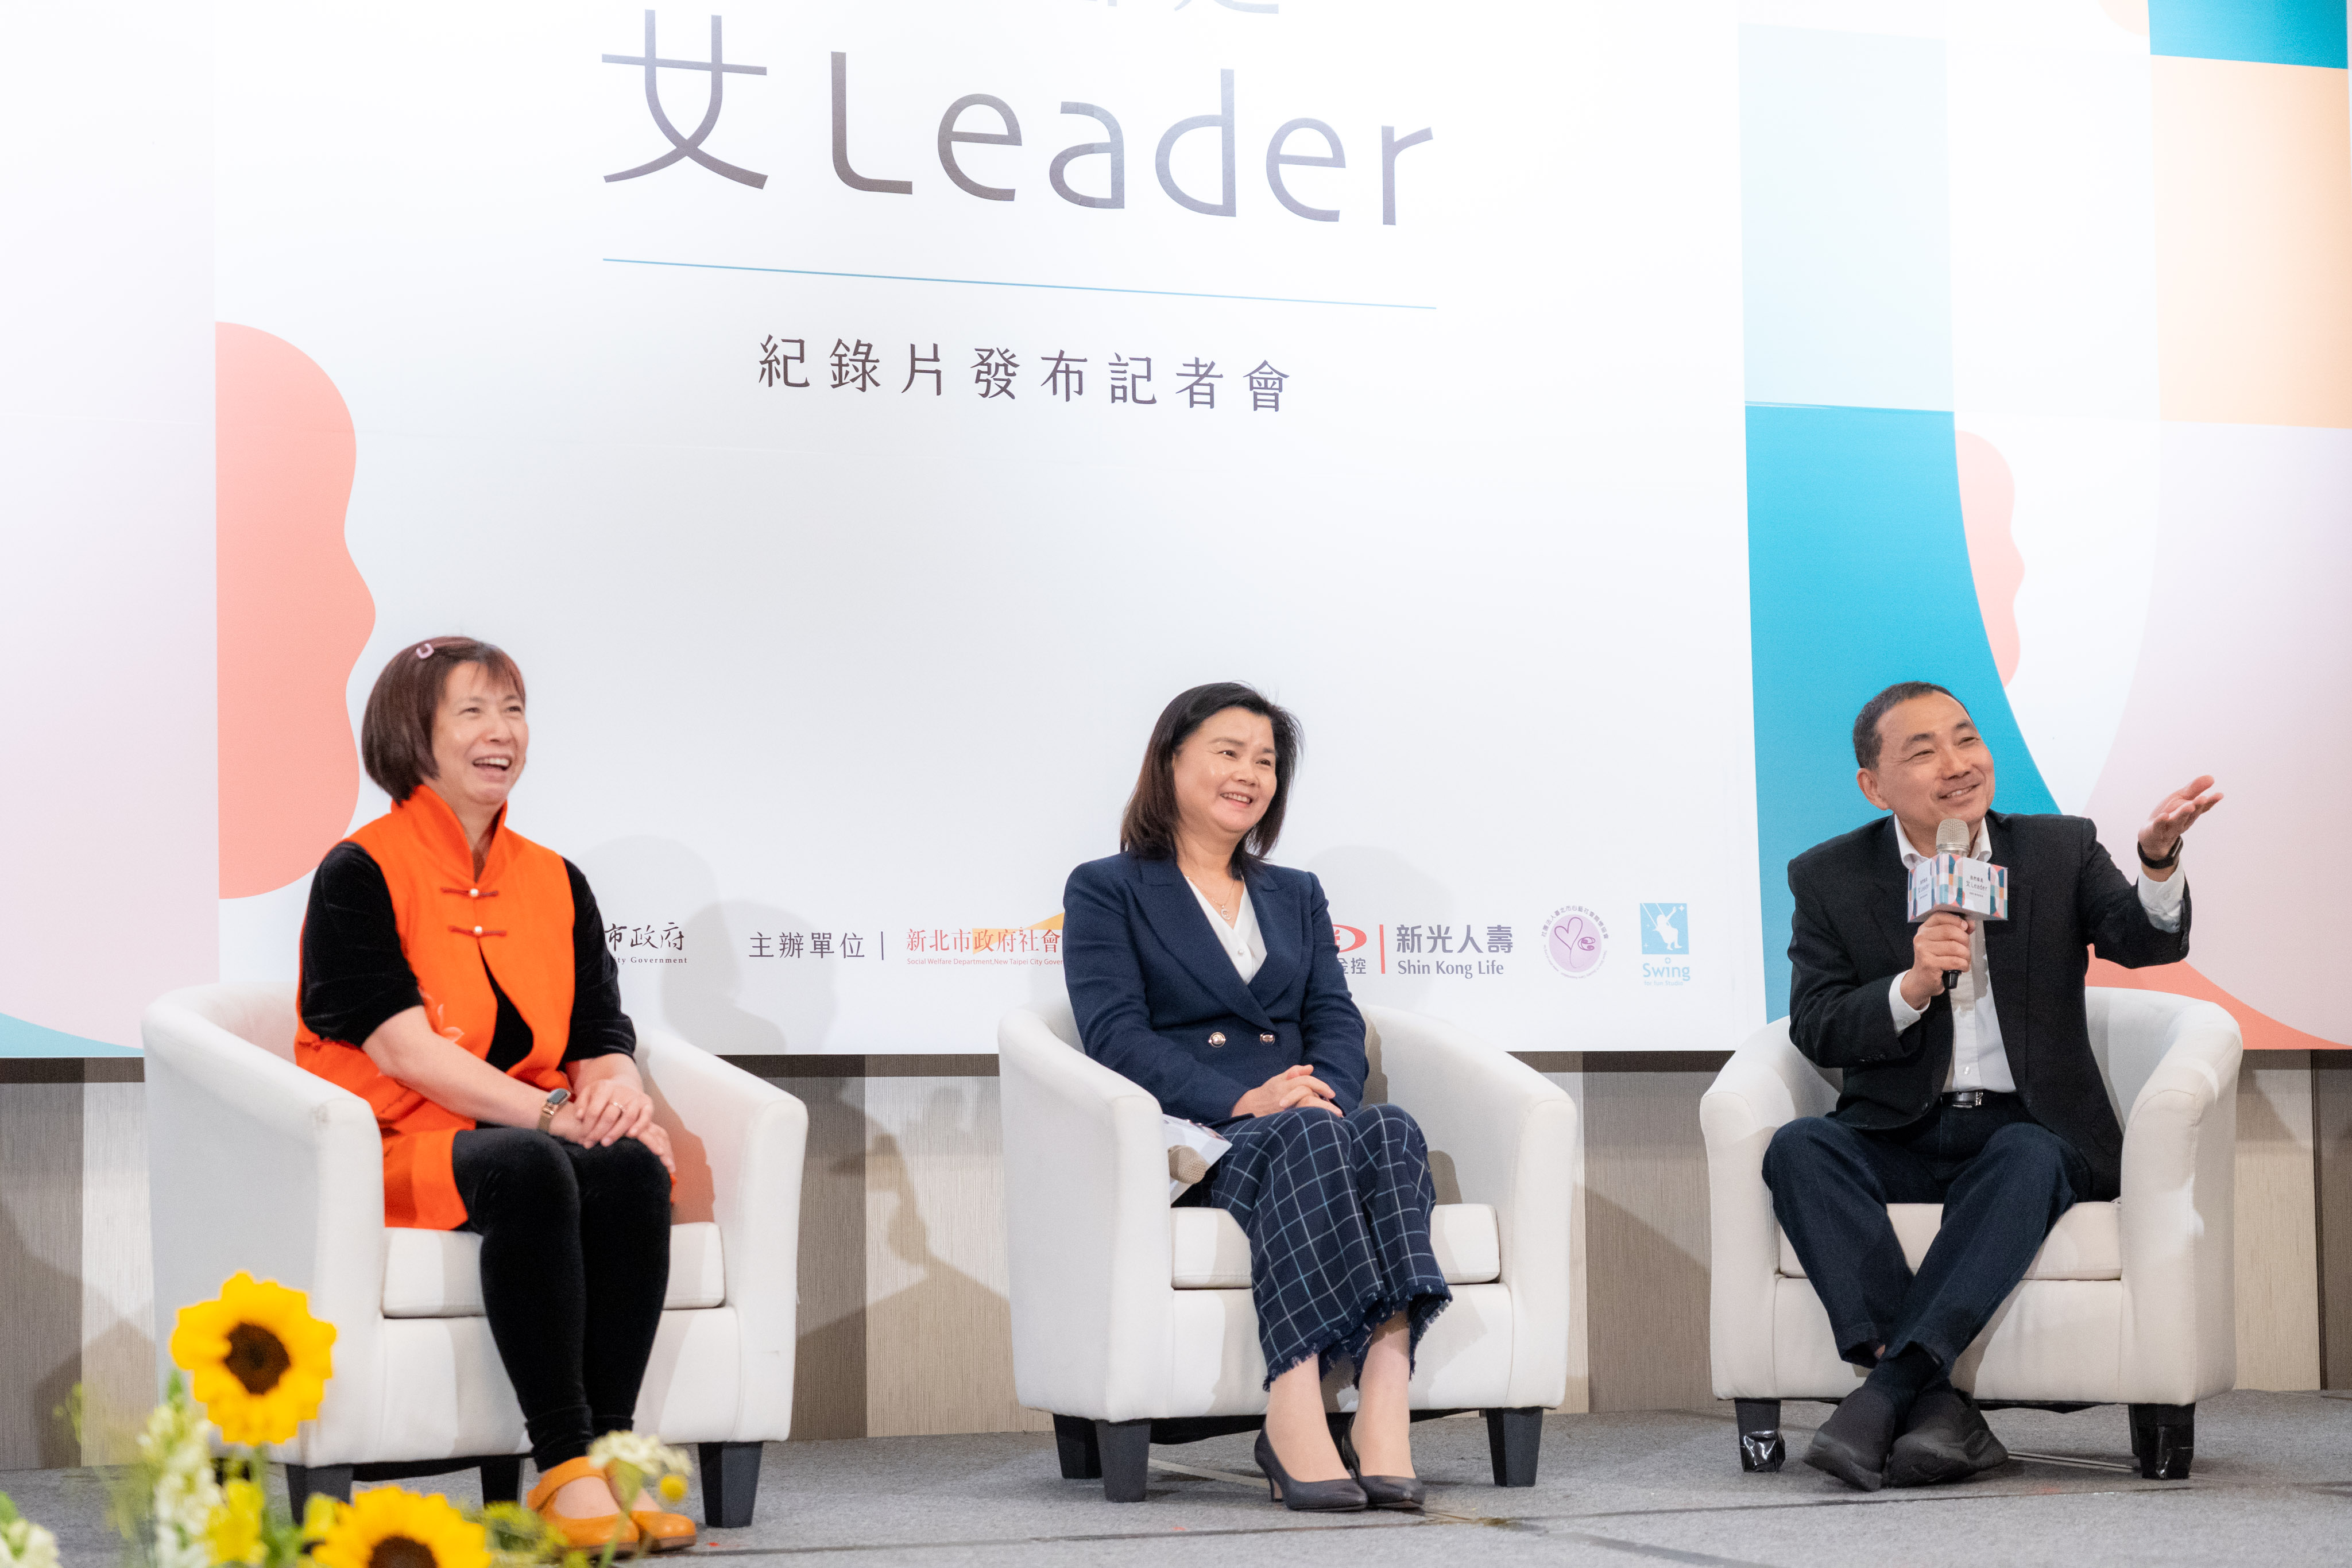 「我們都是女Leader」紀錄片發布記者會,侯友宜市長與女Leader心得分享